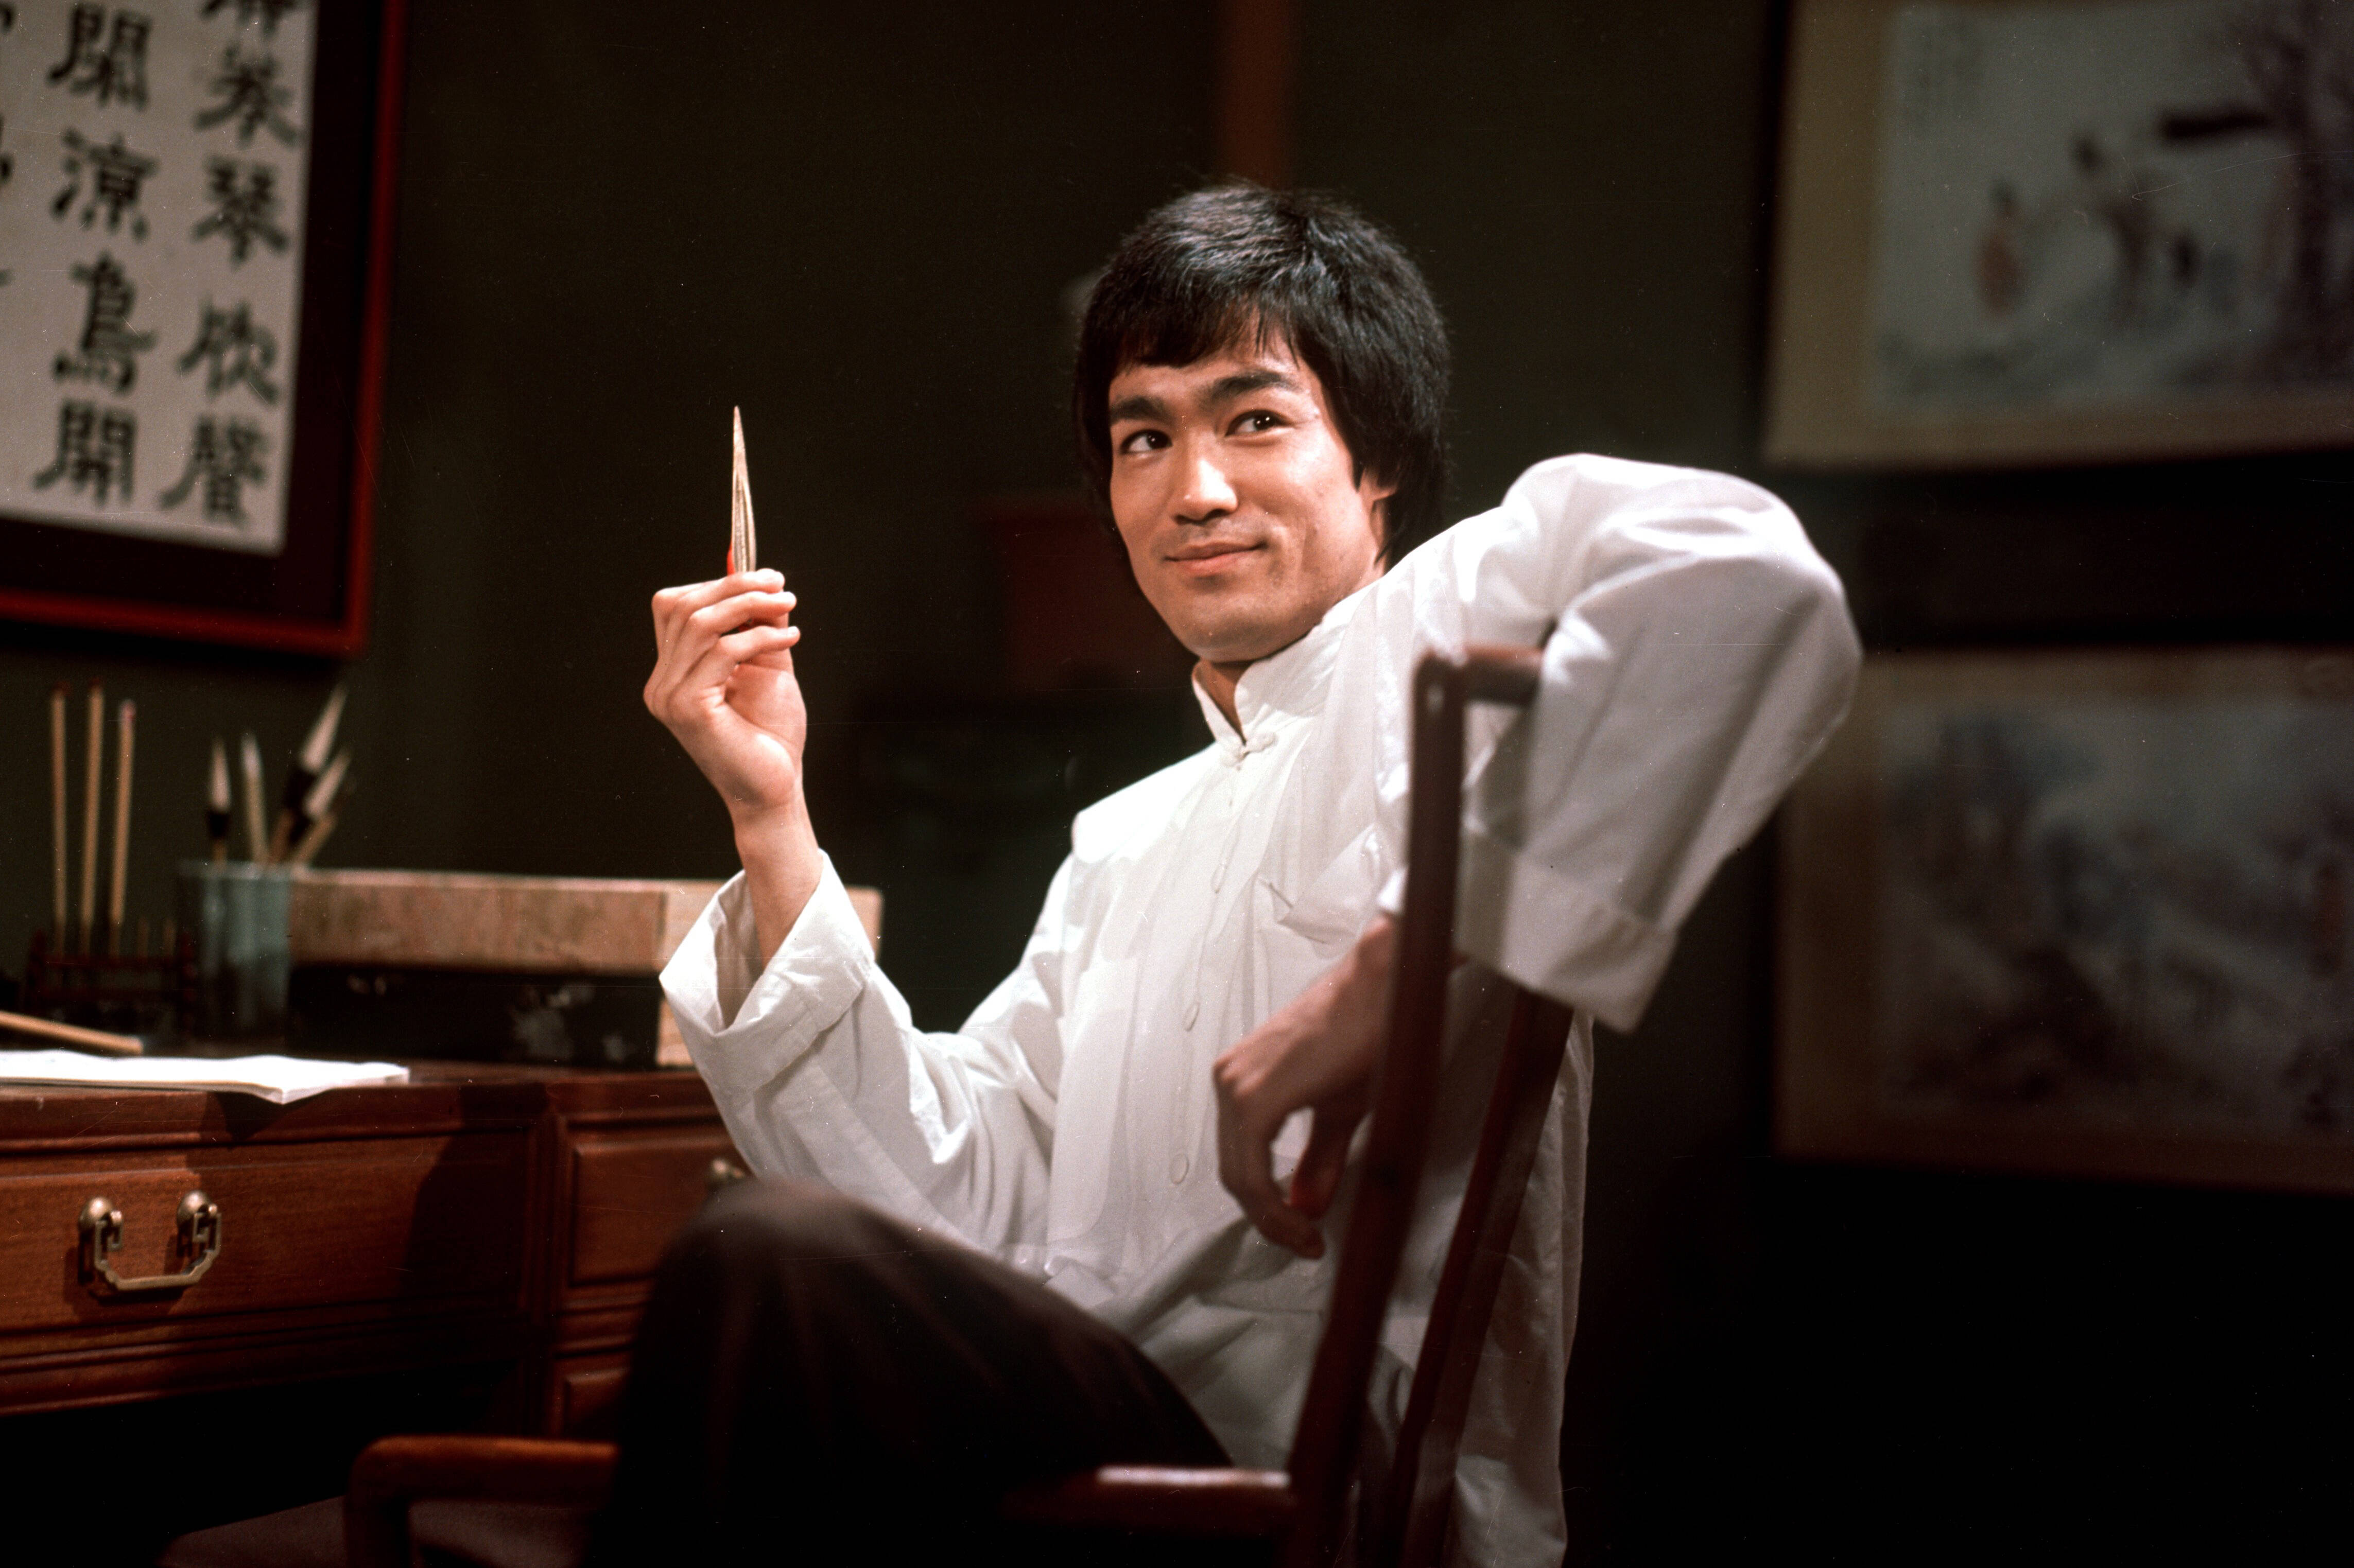 #Bruce Lee: Das sind die Top 7 Filme der Martial-Arts-Legende